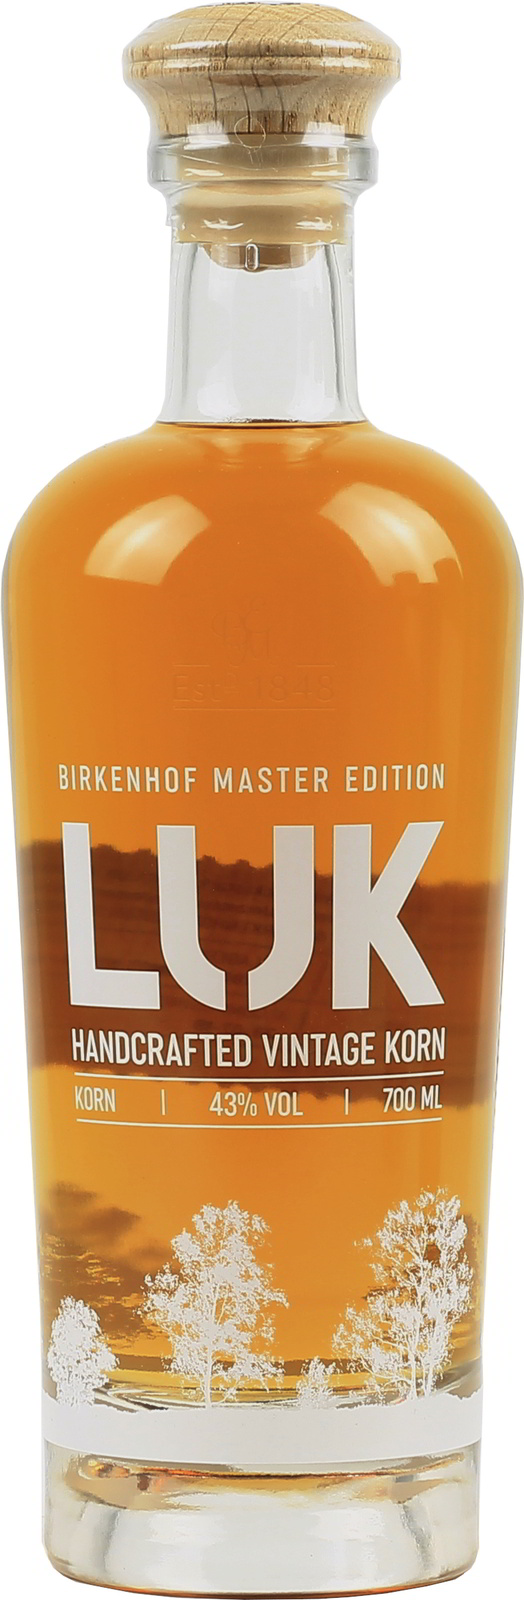 Birkenhof LUK Handcrafted Vintage exquisit Korn